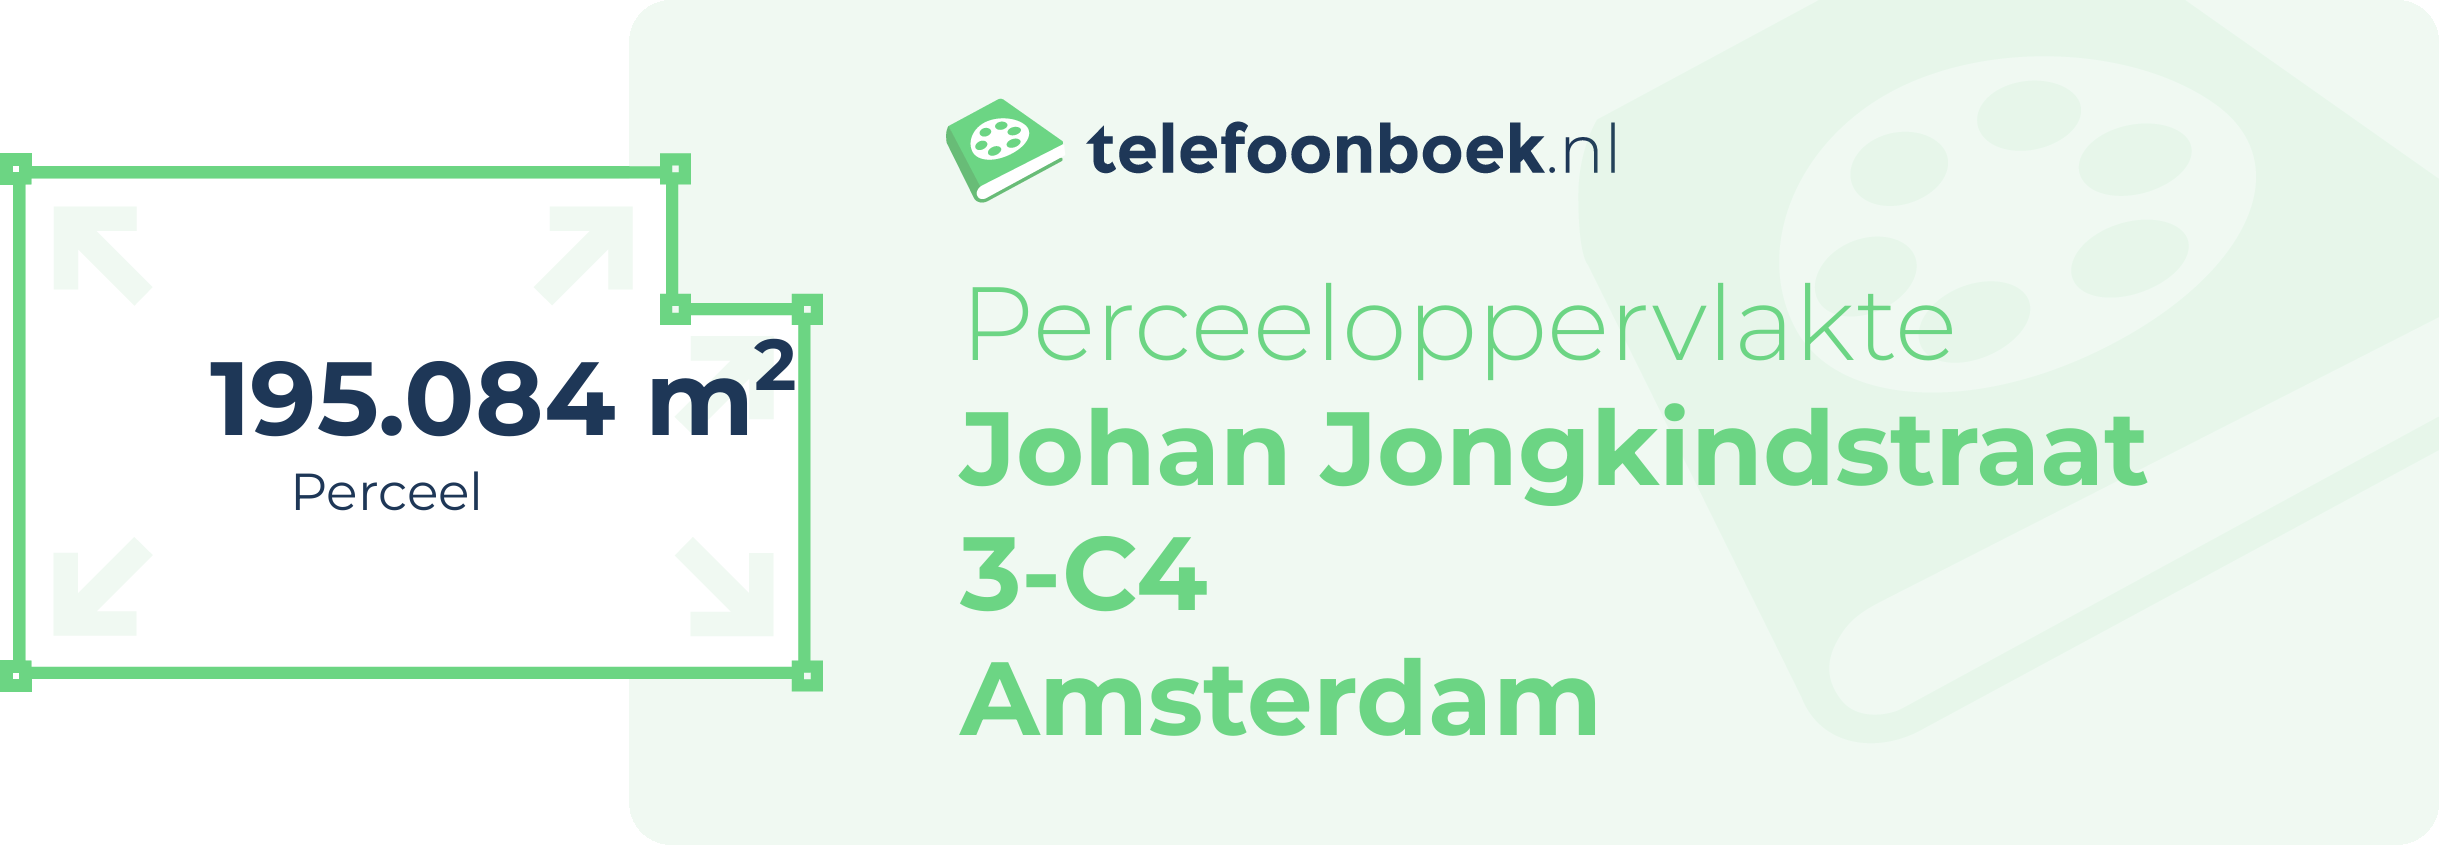 Perceeloppervlakte Johan Jongkindstraat 3-C4 Amsterdam